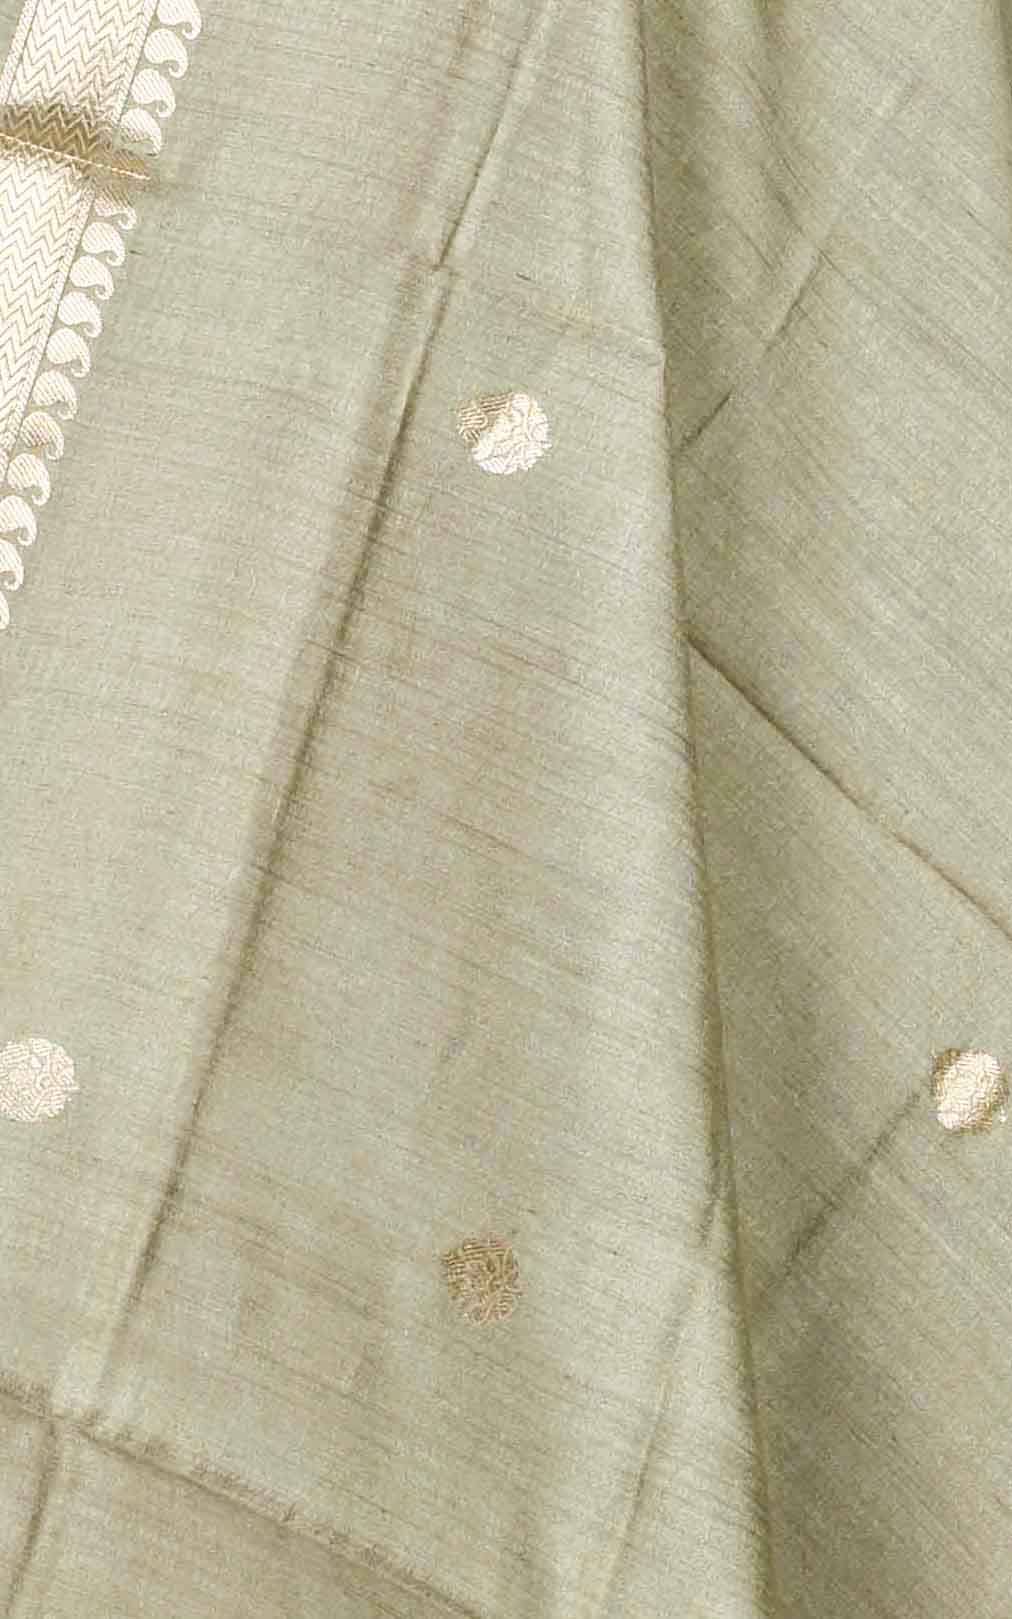 Gooseberry muga silk Banarasi dupatta with small leaf shape booti (2) Close up